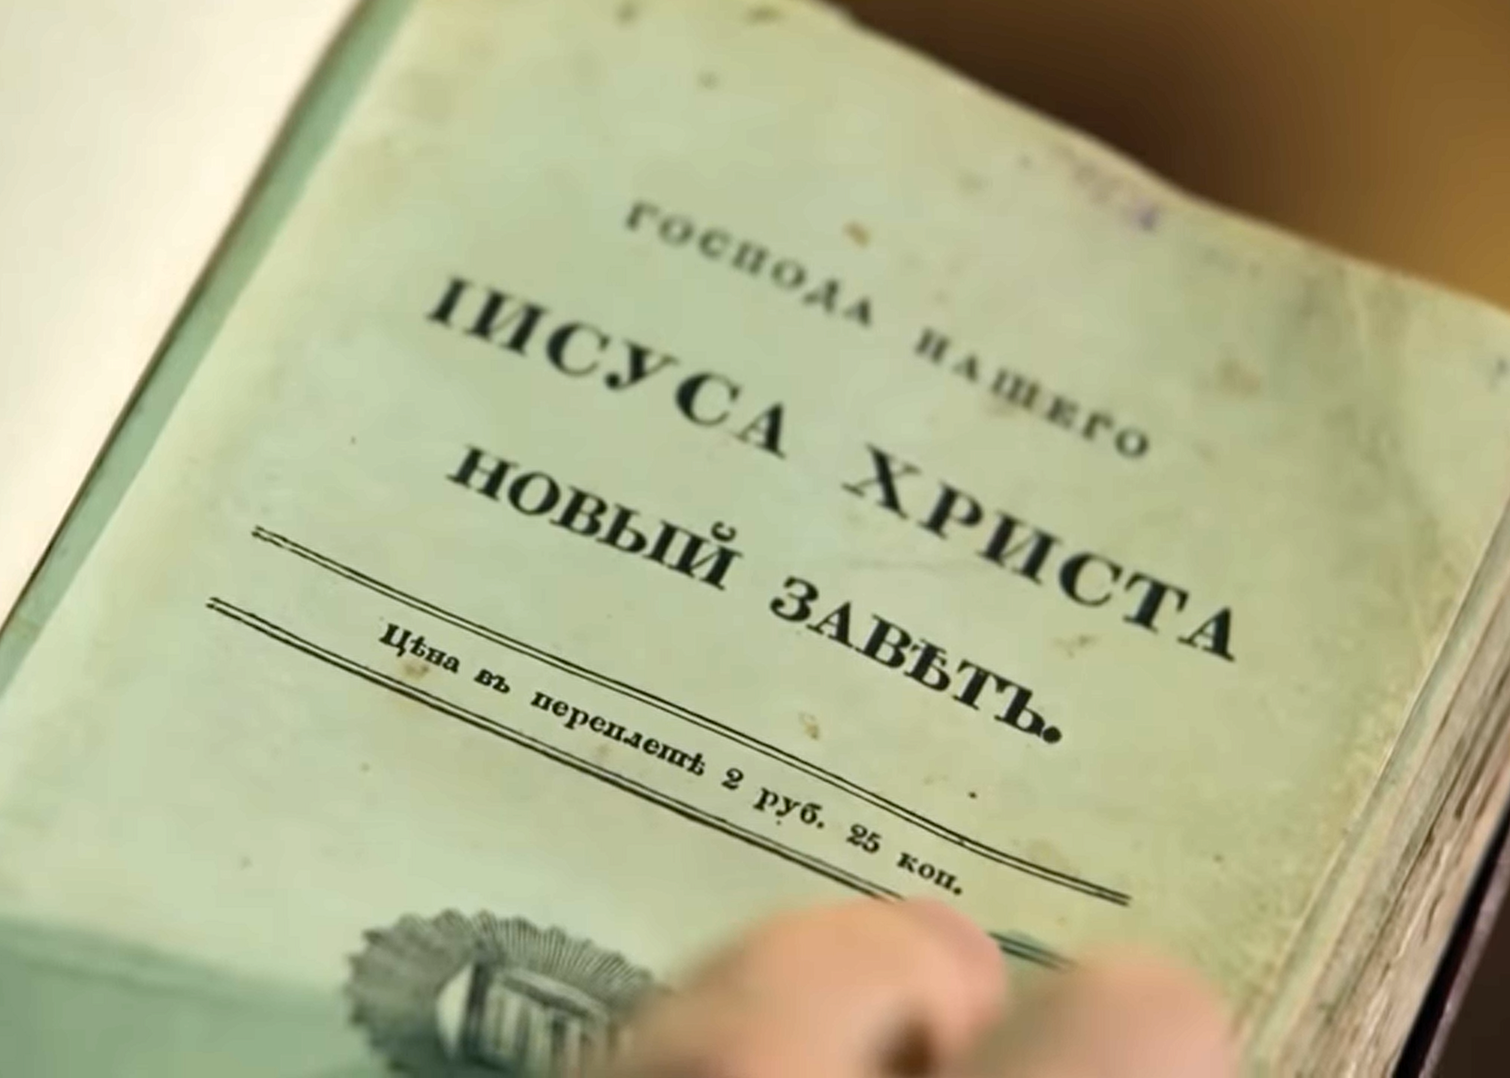 Евангелие, которое Достоевский держал в руках перед смертью, представят в Русском музее